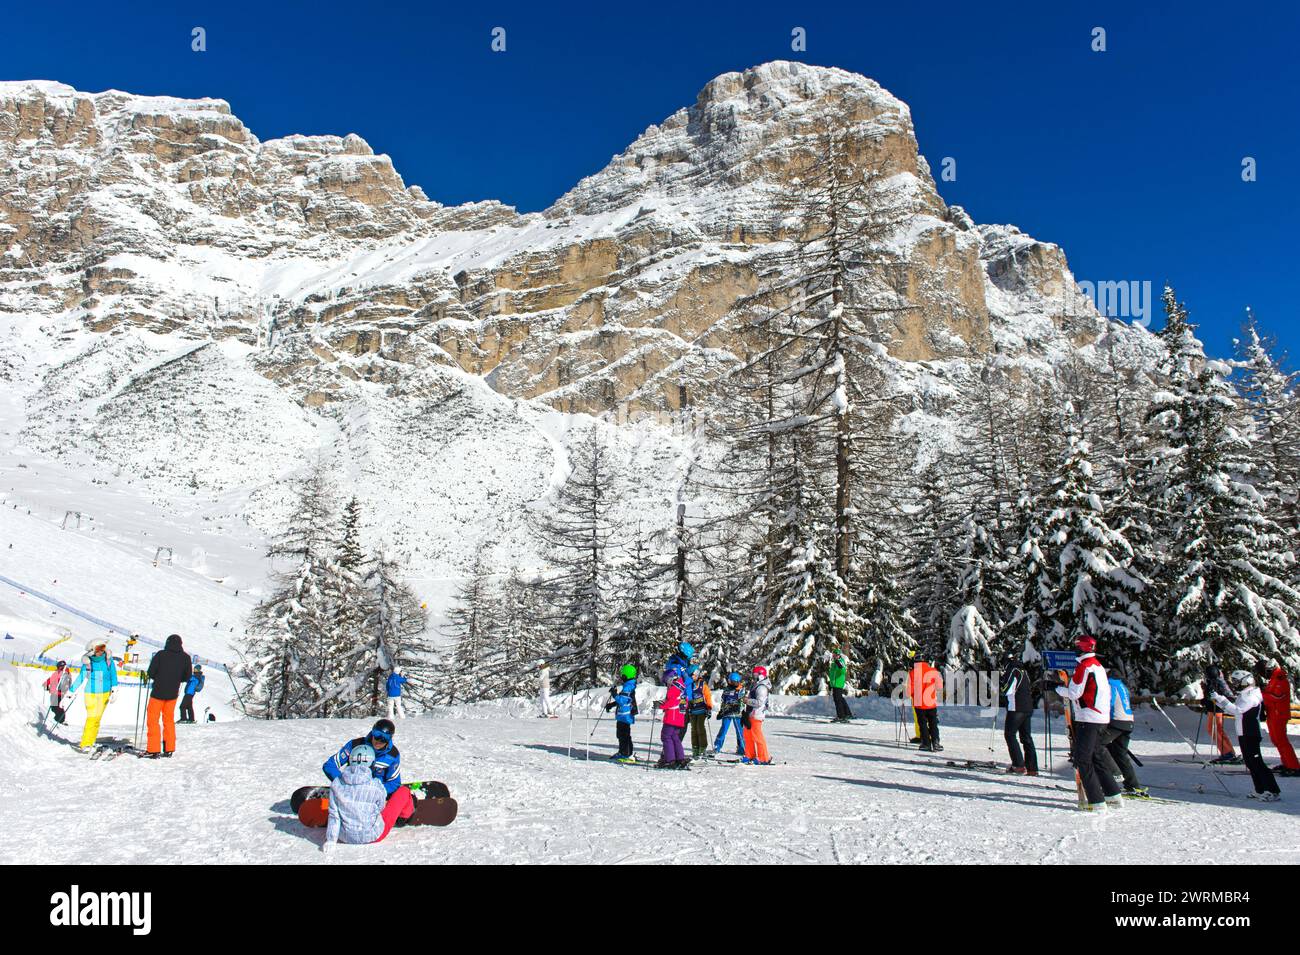 Sciatori sul col Pradat di fronte alla vetta innevata del Sassongher, Colfosco, comprensorio sciistico dell'alta Badia, Dolomiti, alto Adige, Italia Foto Stock